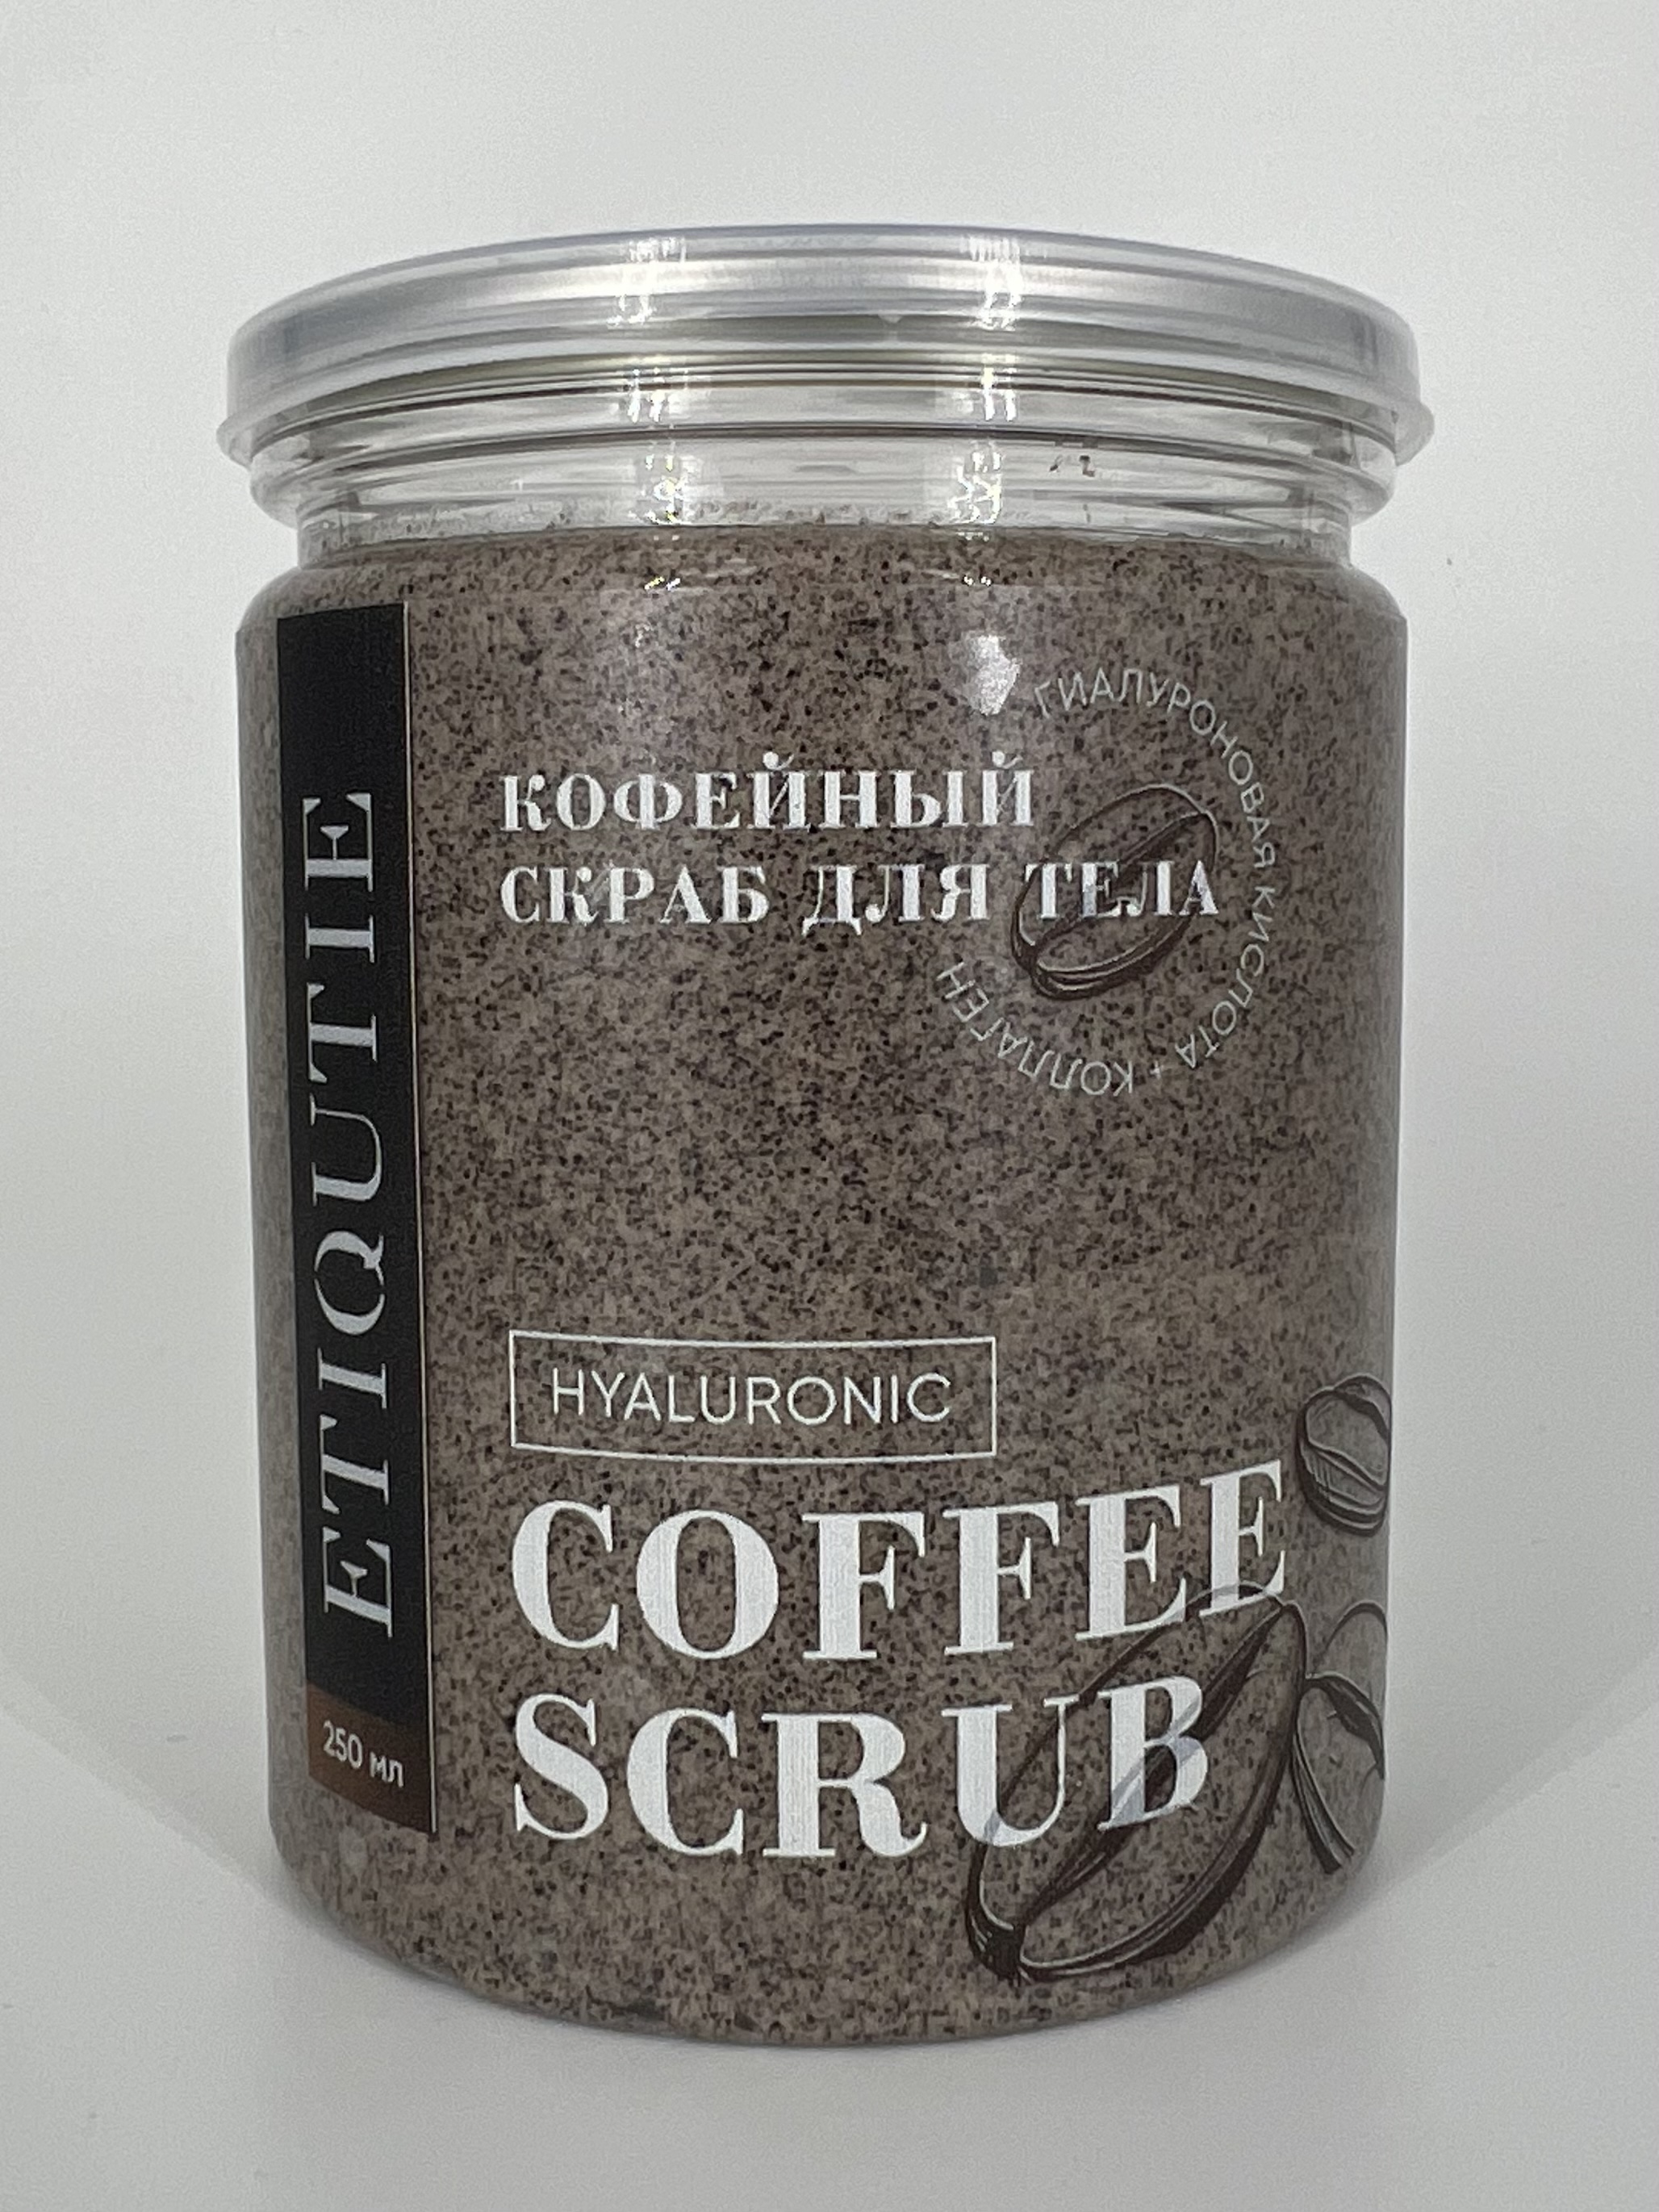 Гиалуроновый скраб кофейный ETIQUTIE с коллагеном для тела 200г apolina скраб солевой масляный для тела кофе и шоколад 300 0